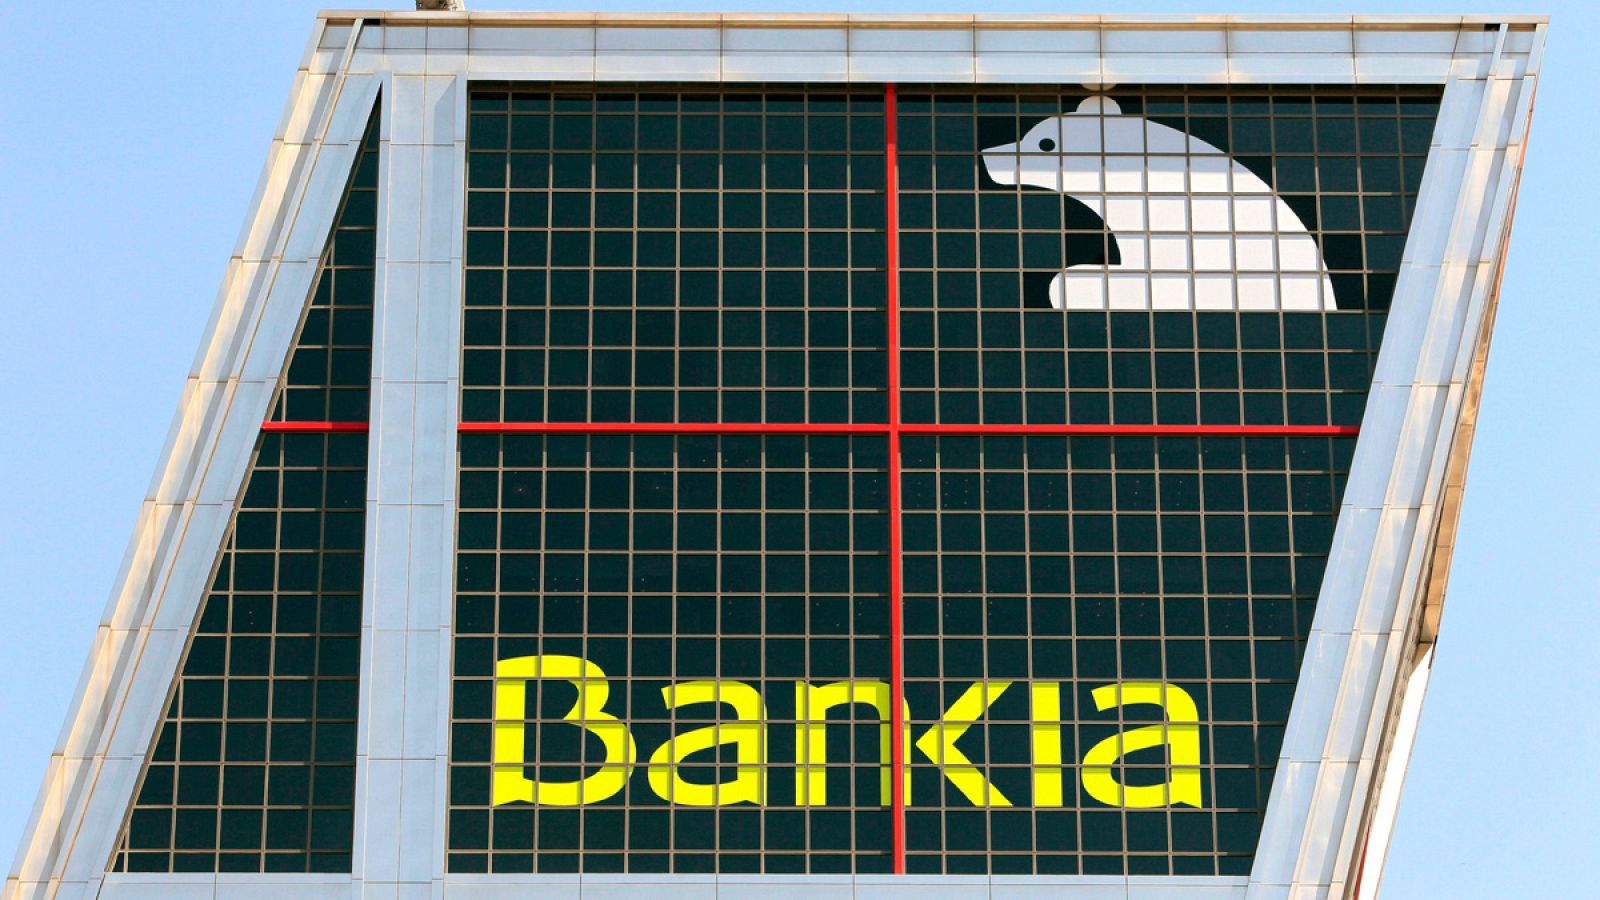 Sede central de Bankia, en Madrid, en una imagen de 2011